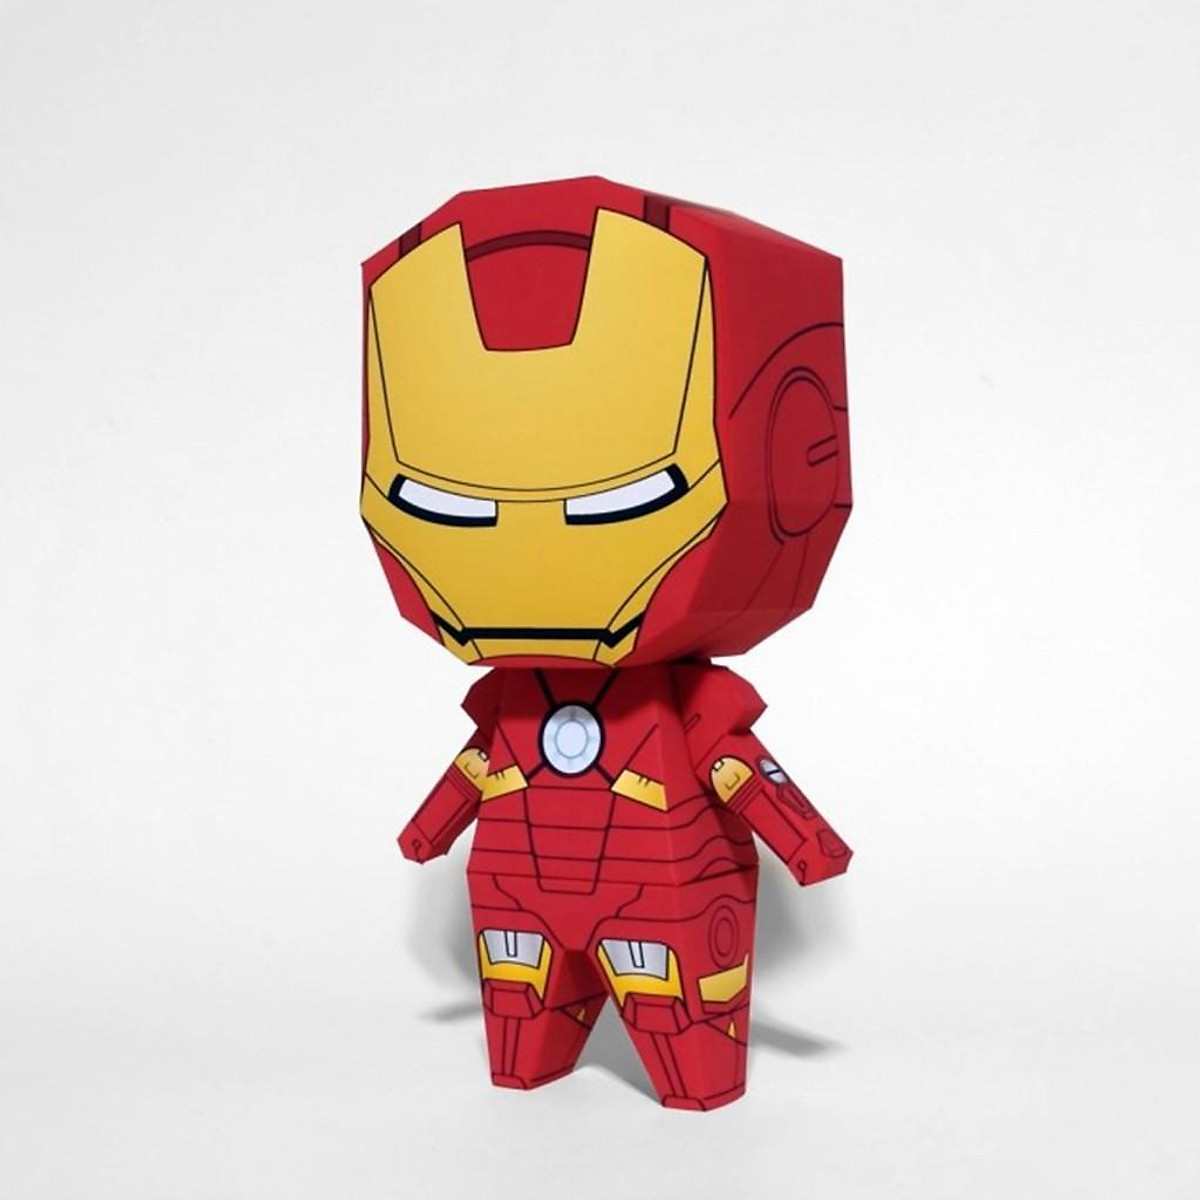 Mô hình giấy Robot Chibi Iron Man: Bạn yêu thích sự sáng tạo và tinh thần đam mê? Hãy cùng trải qua thử thách đầy thú vị với mô hình giấy Robot Chibi Iron Man, một sản phẩm đầy màu sắc và tinh tế. Từ thiết kế đến cách lắp ráp, bạn sẽ được thể hiện tài năng của mình.